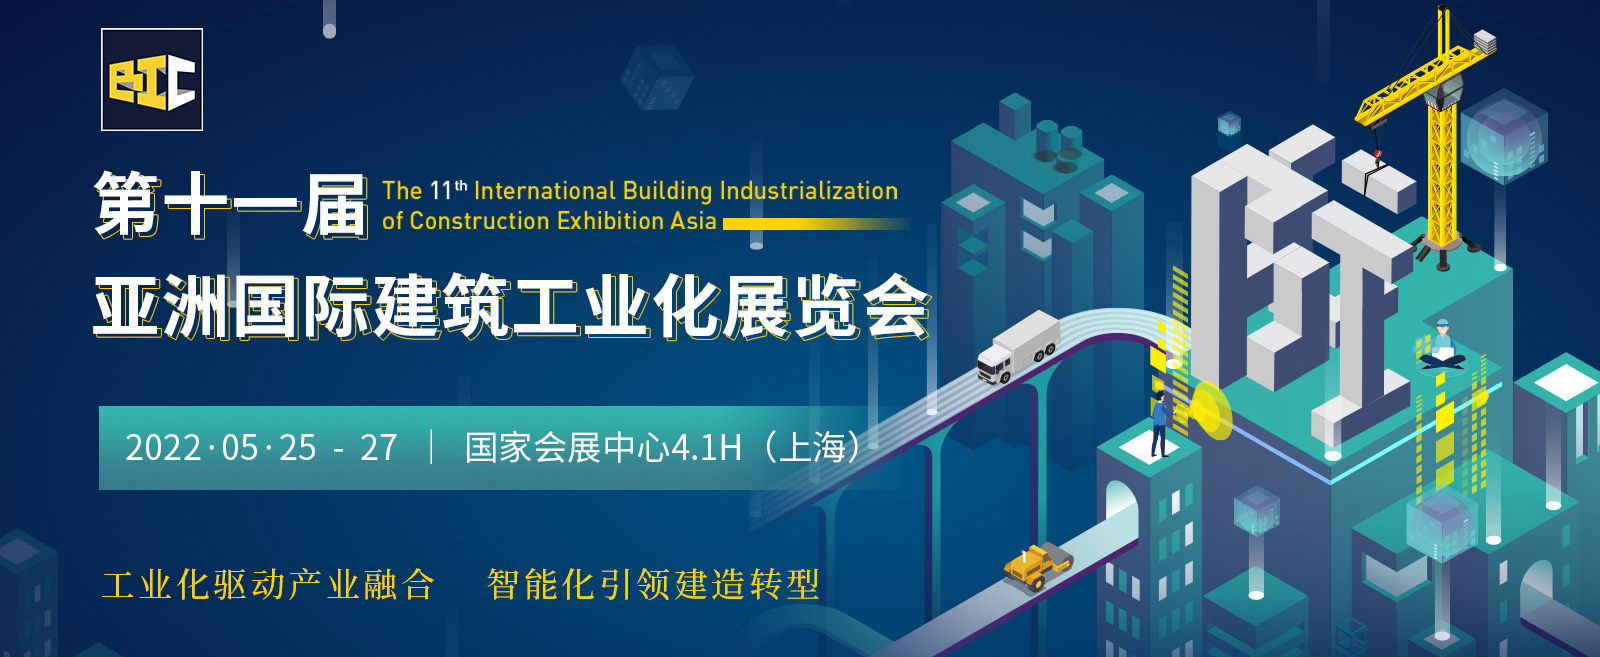 第十一届亚洲国际建筑工业化展览会